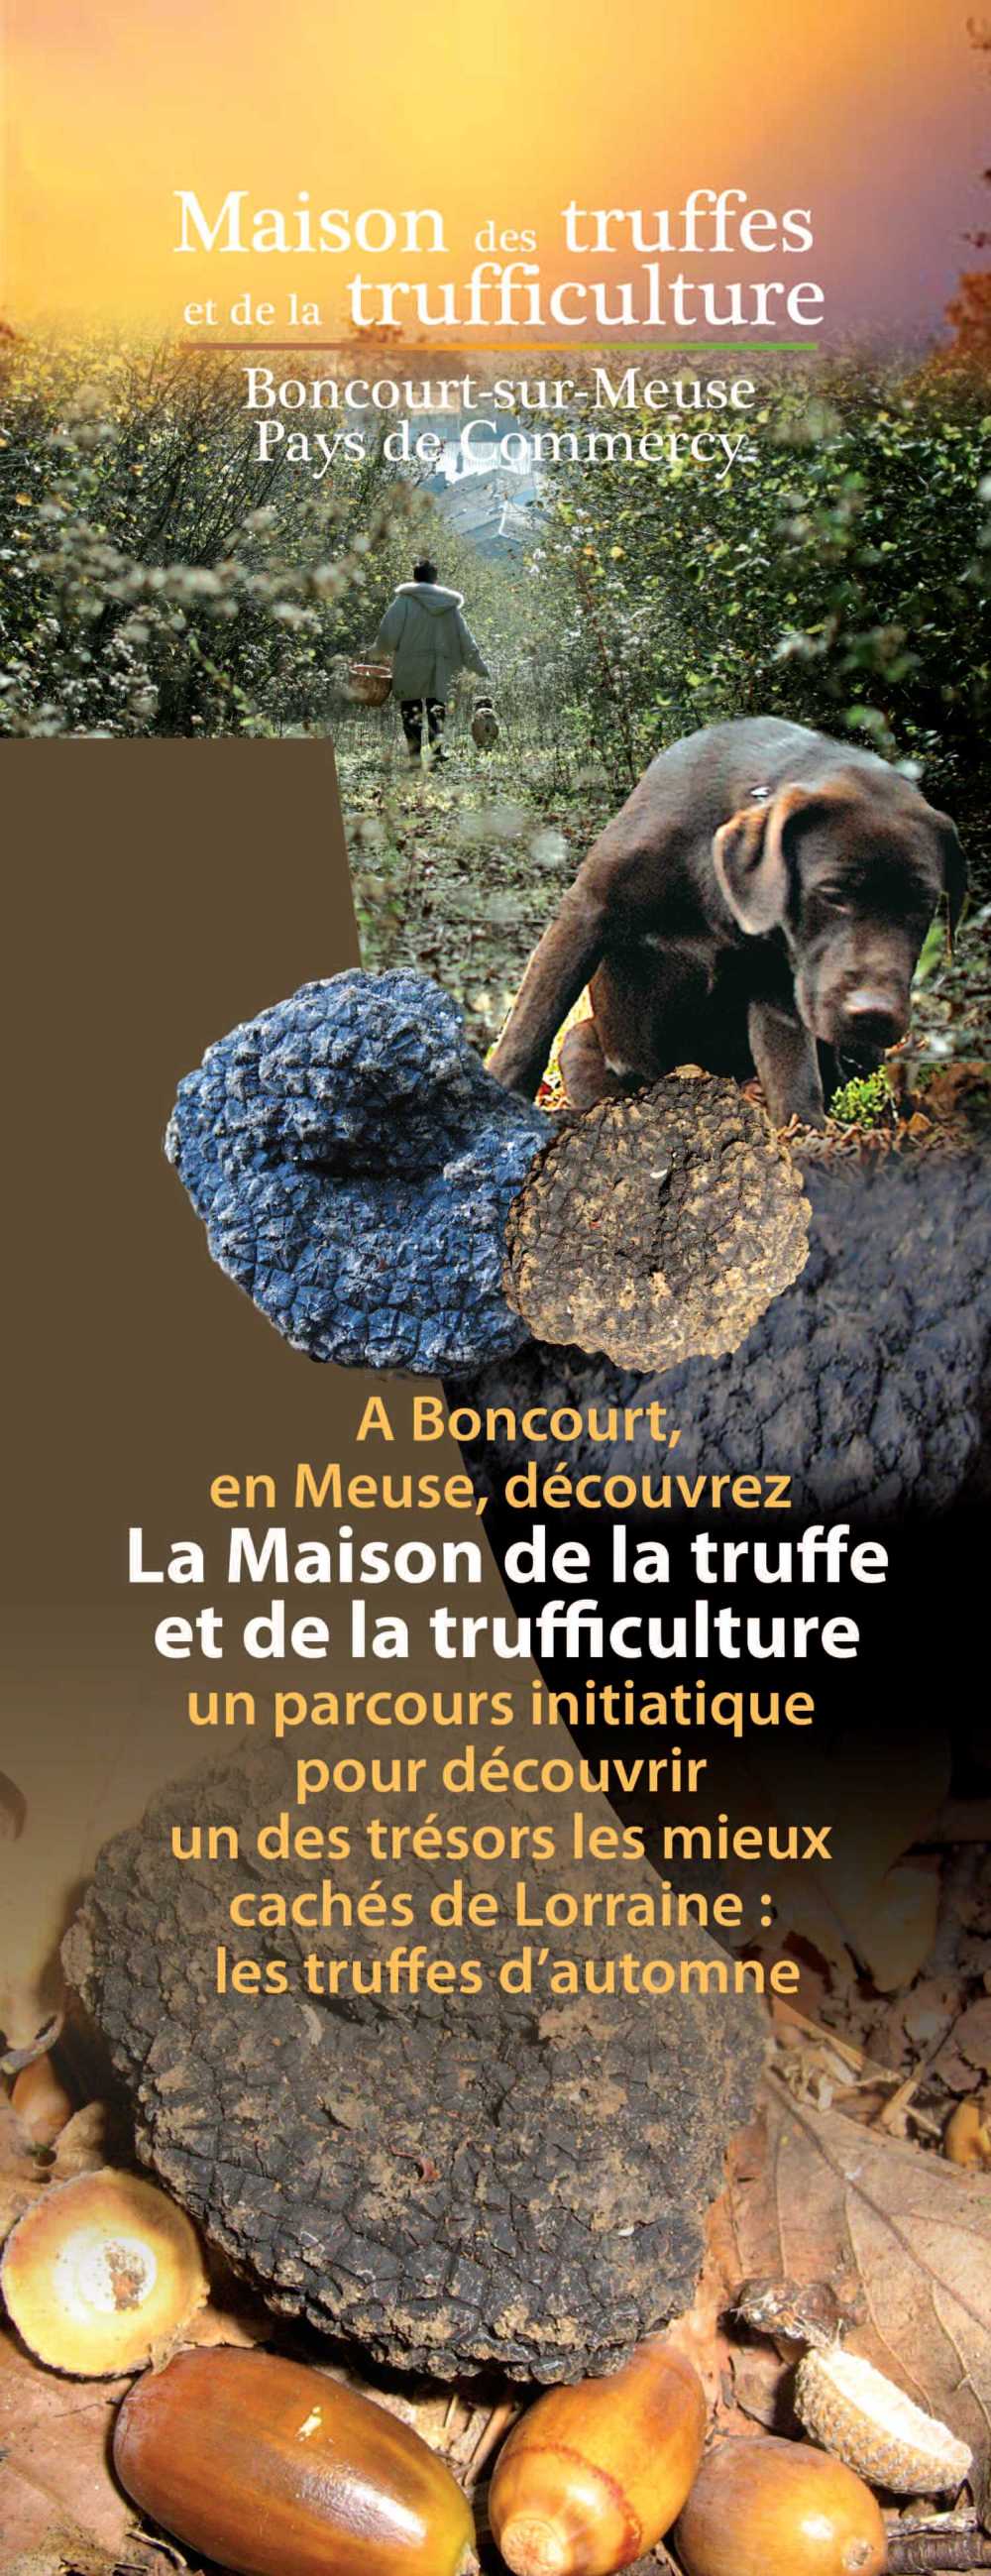 Présentation de la maison des truffes à Boncourt-sur-Meuse